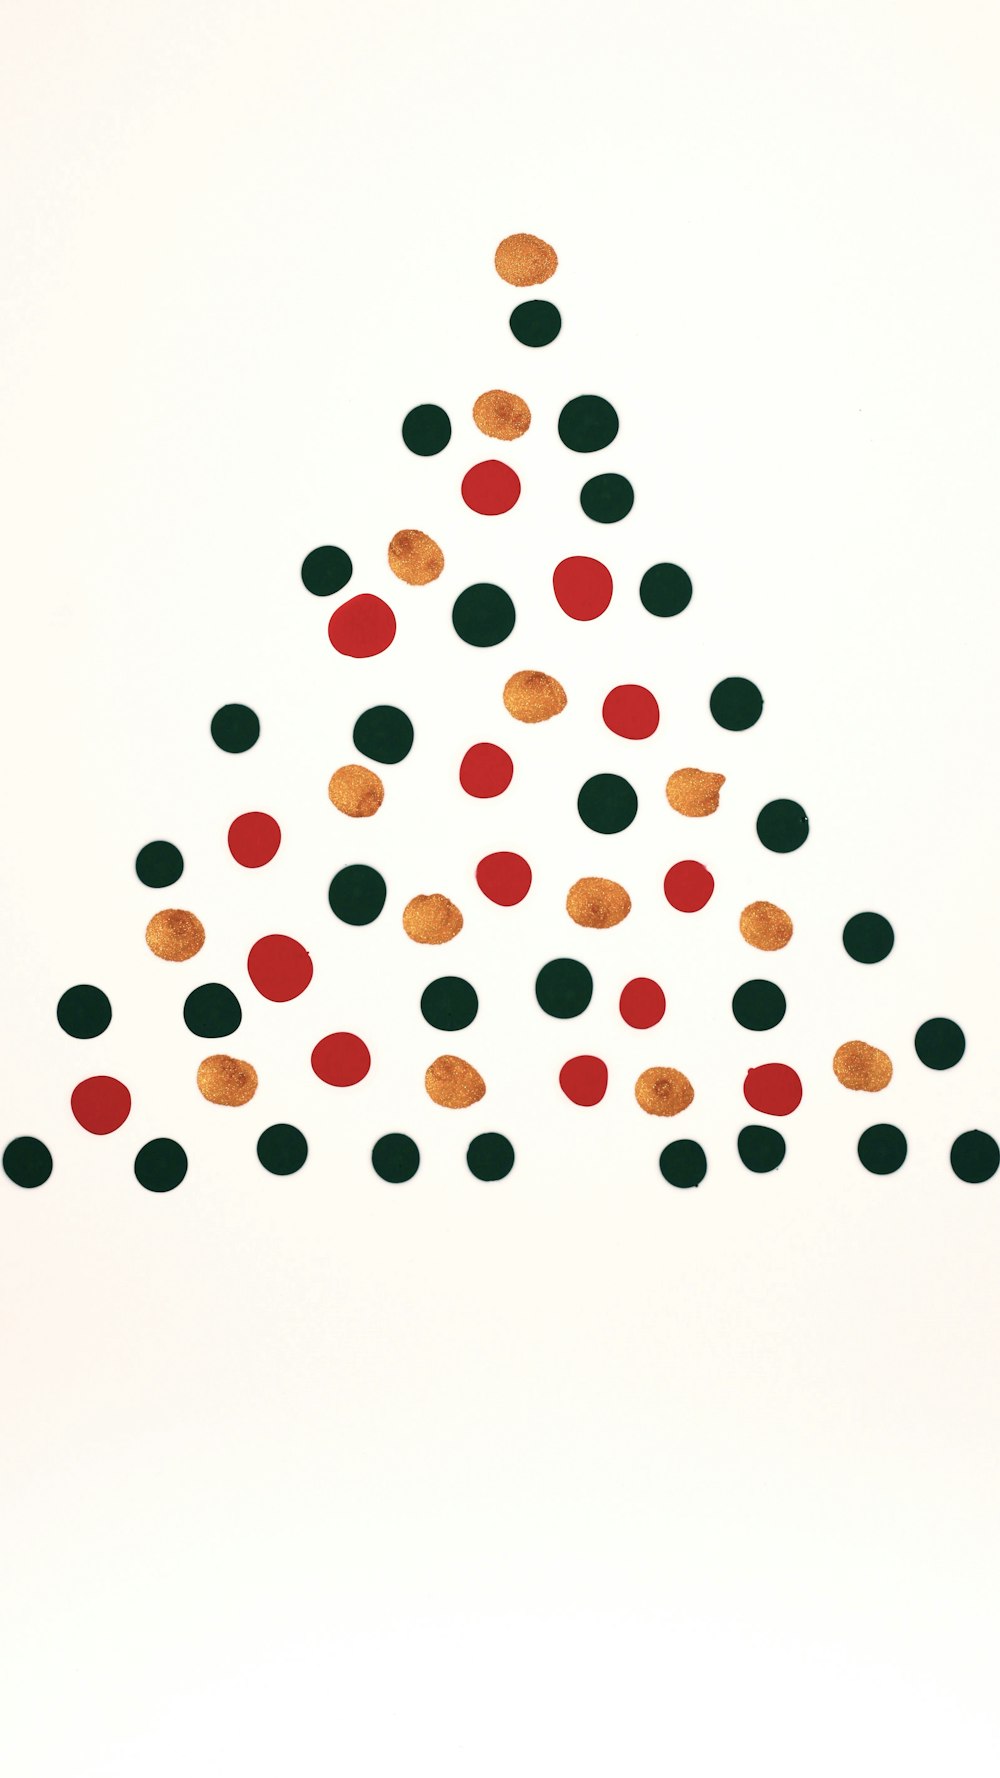 Une image d’un sapin de Noël fait de cercles